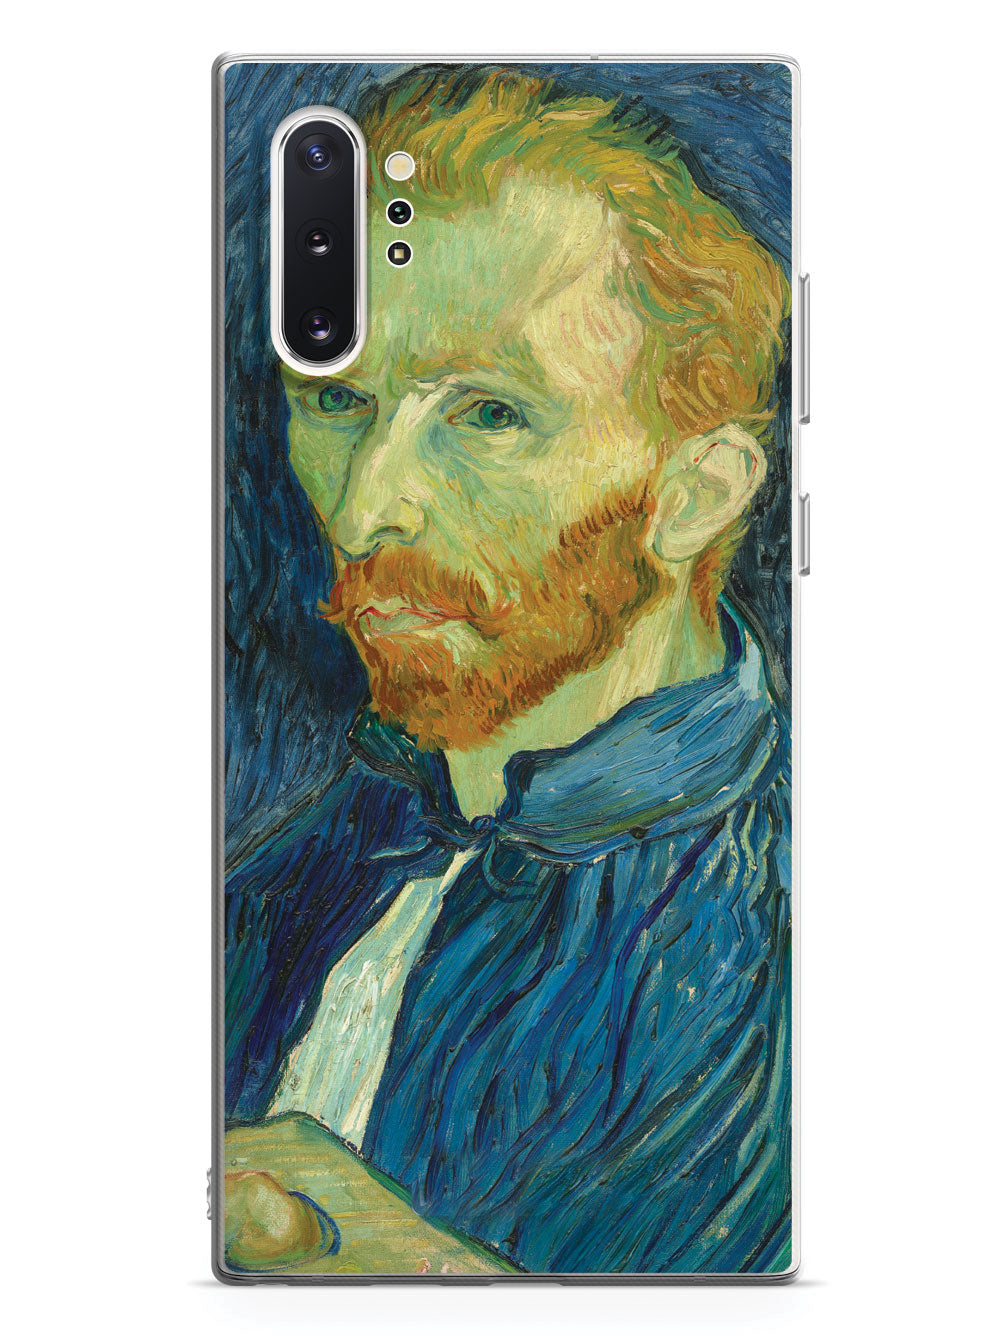 Vincent van Gogh Self-Portrait Case